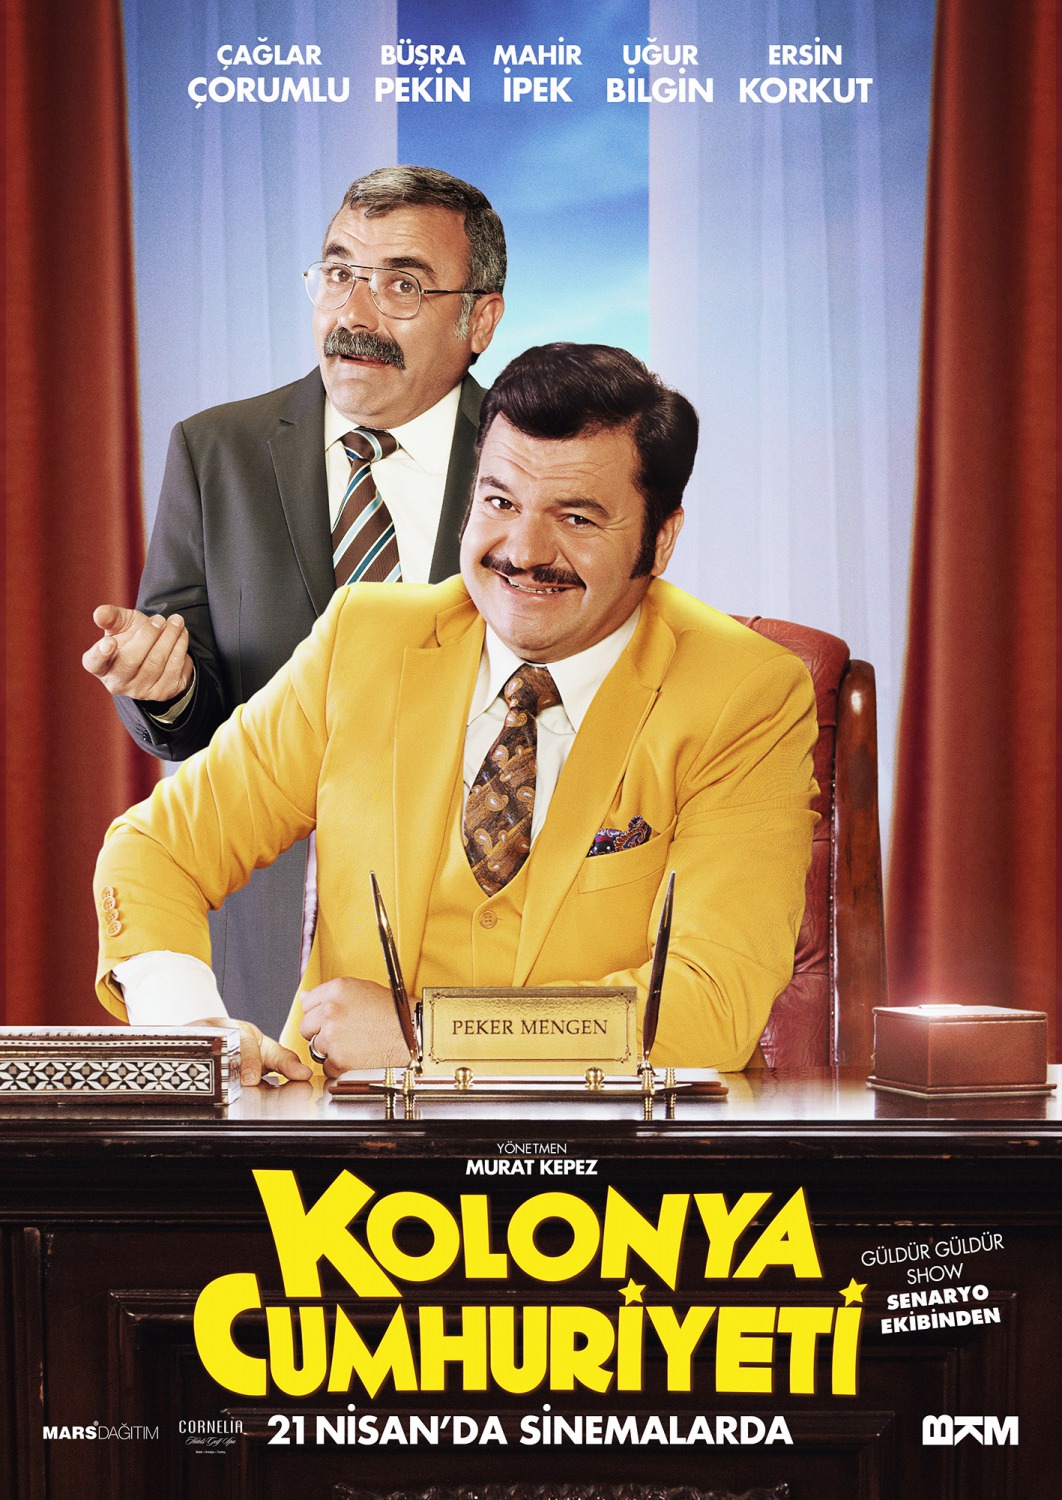 Extra Large Movie Poster Image for Kolonya Cumhuriyeti (#4 of 7)